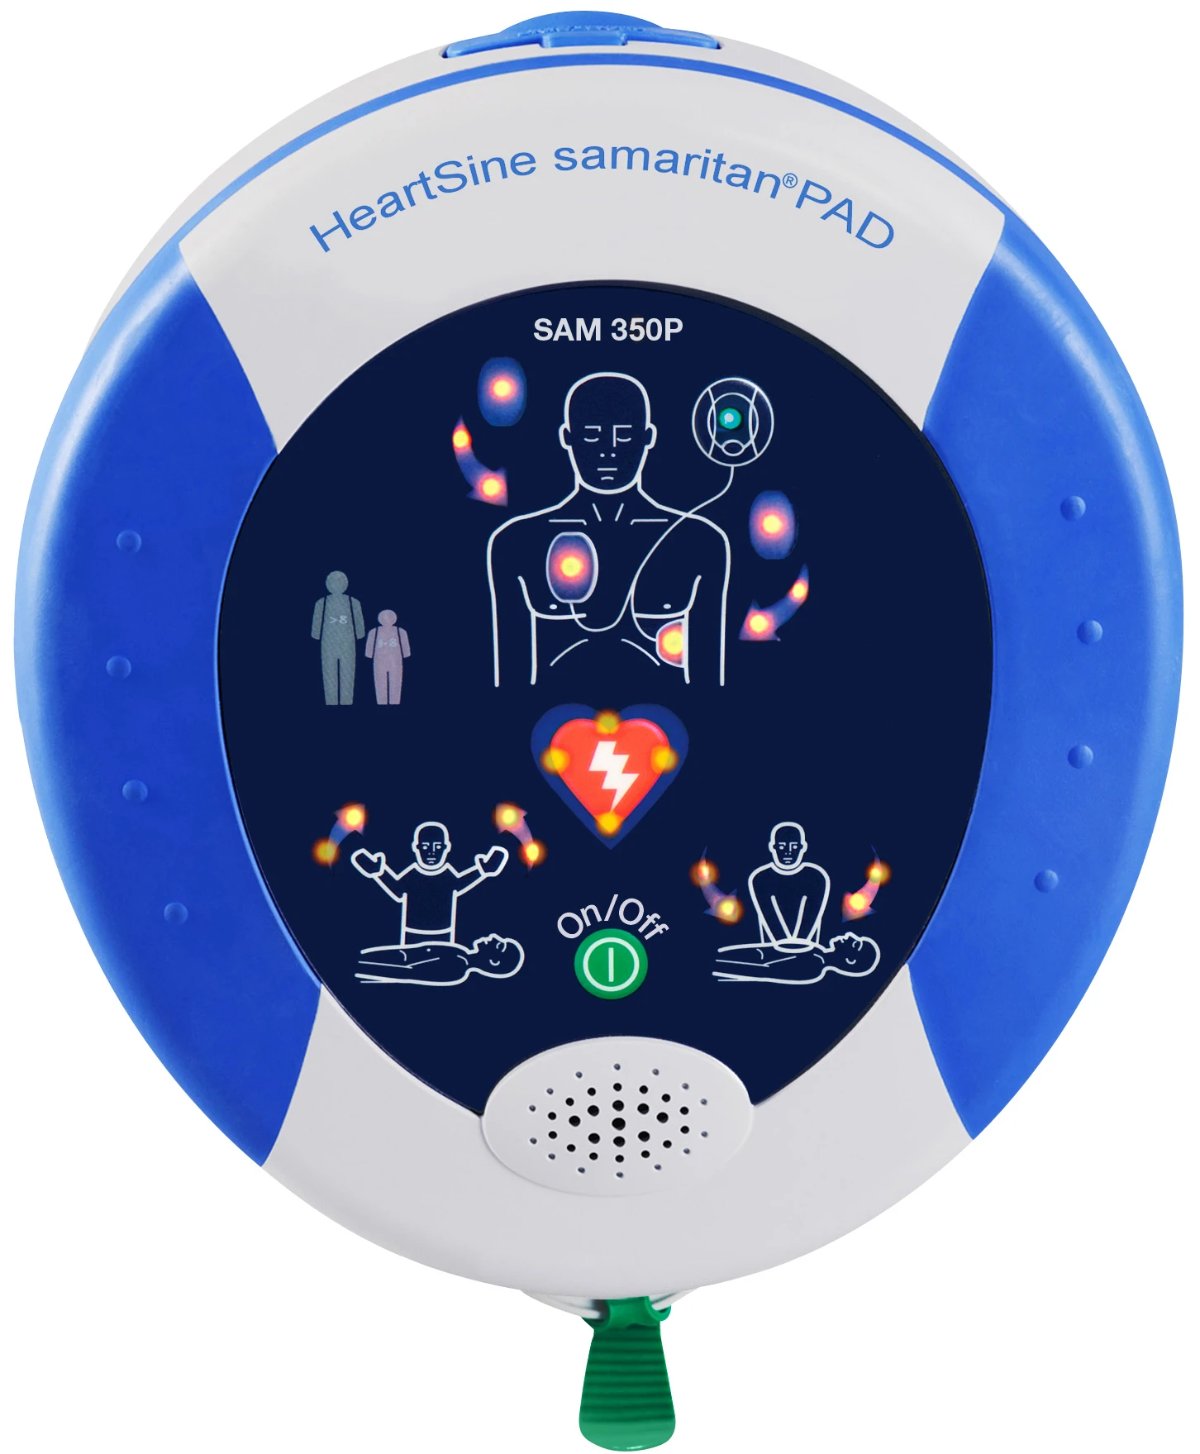 Desfibrilador automático Samaritan Pad 360P - Medica Marquet